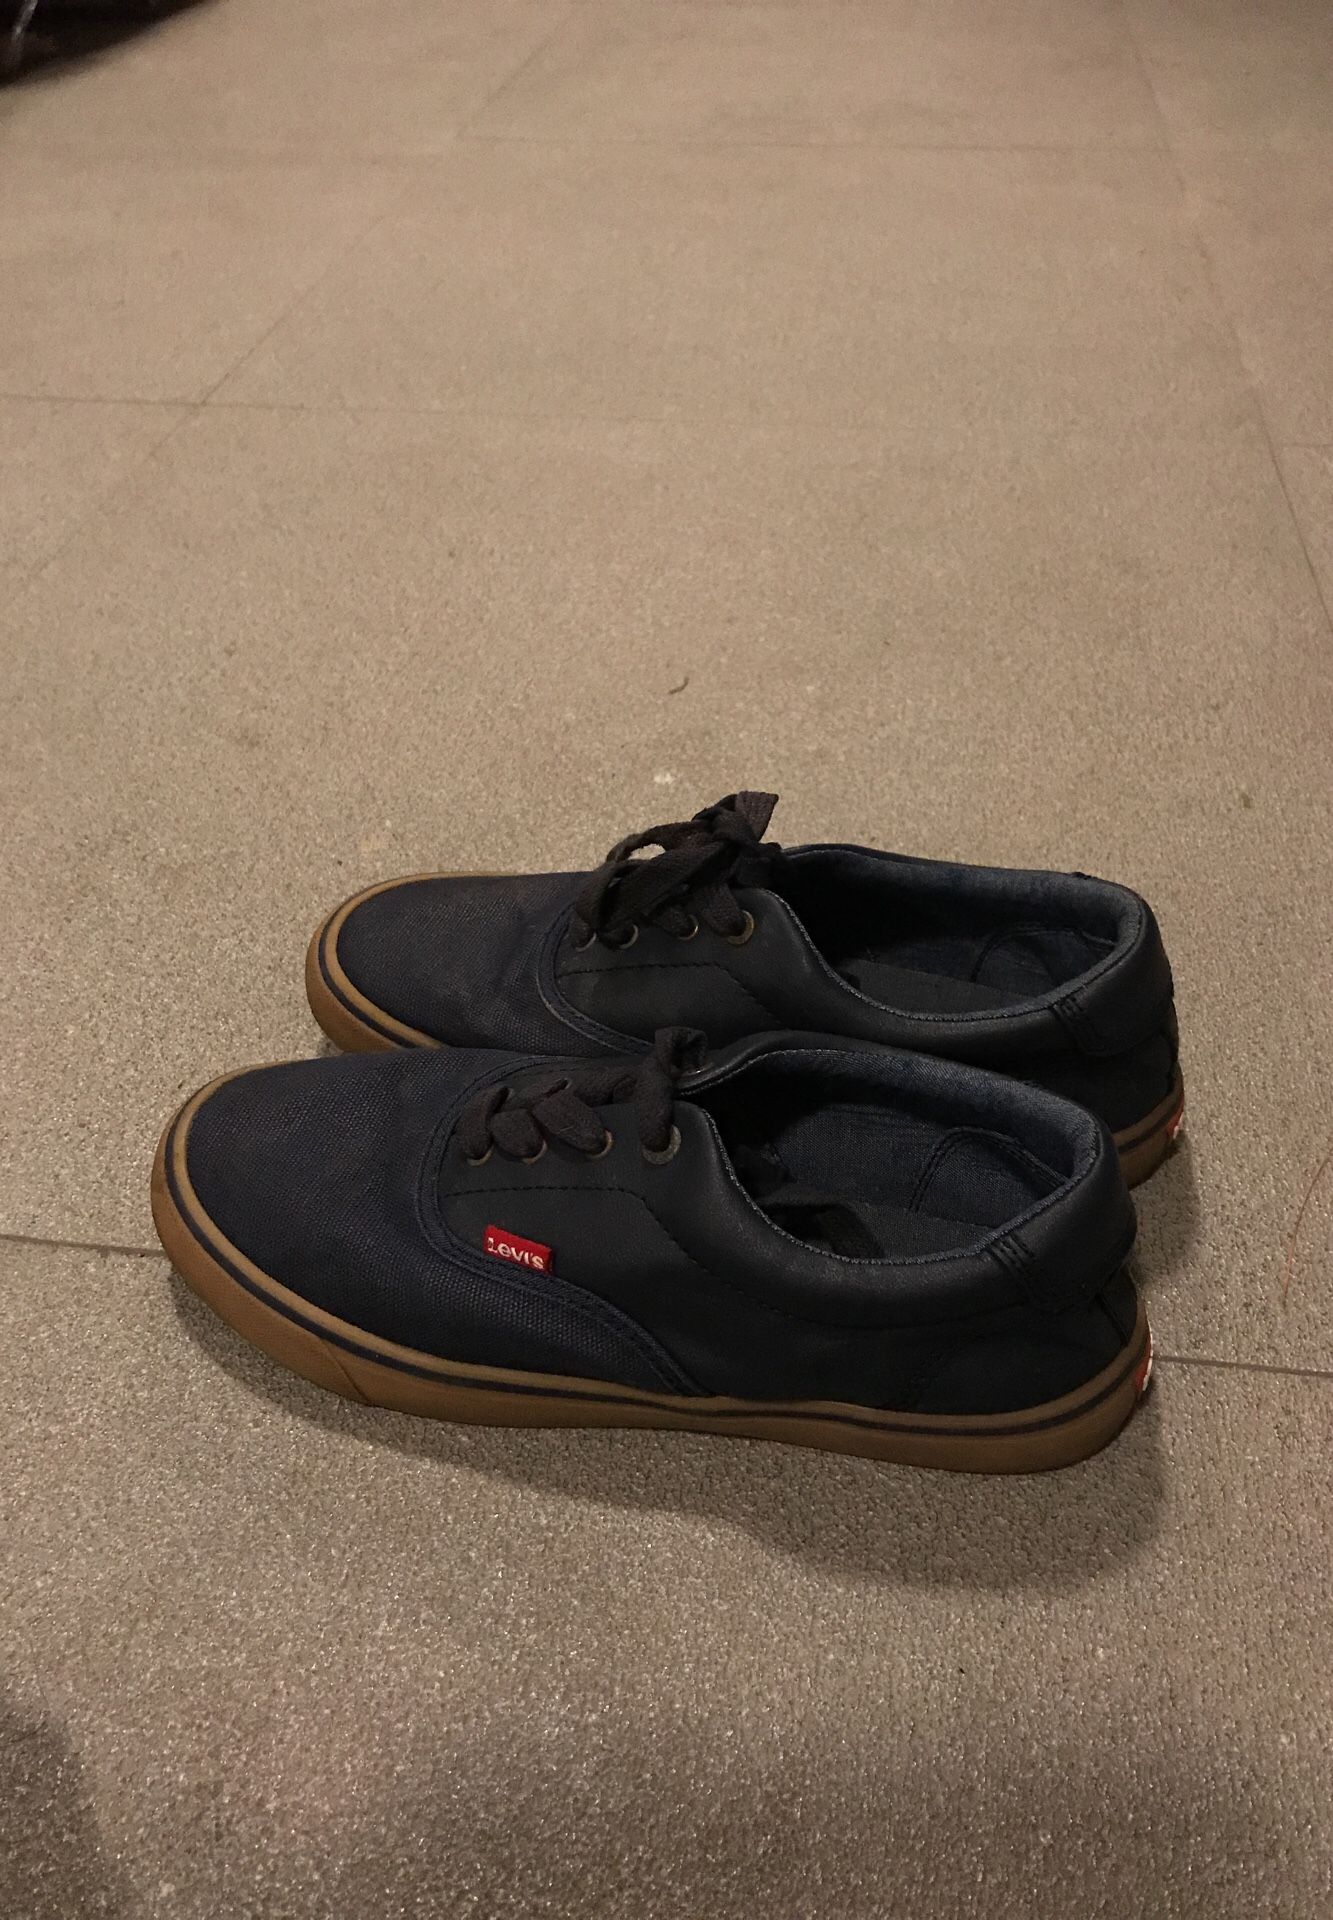 Levi’s shoes size 6 1/2